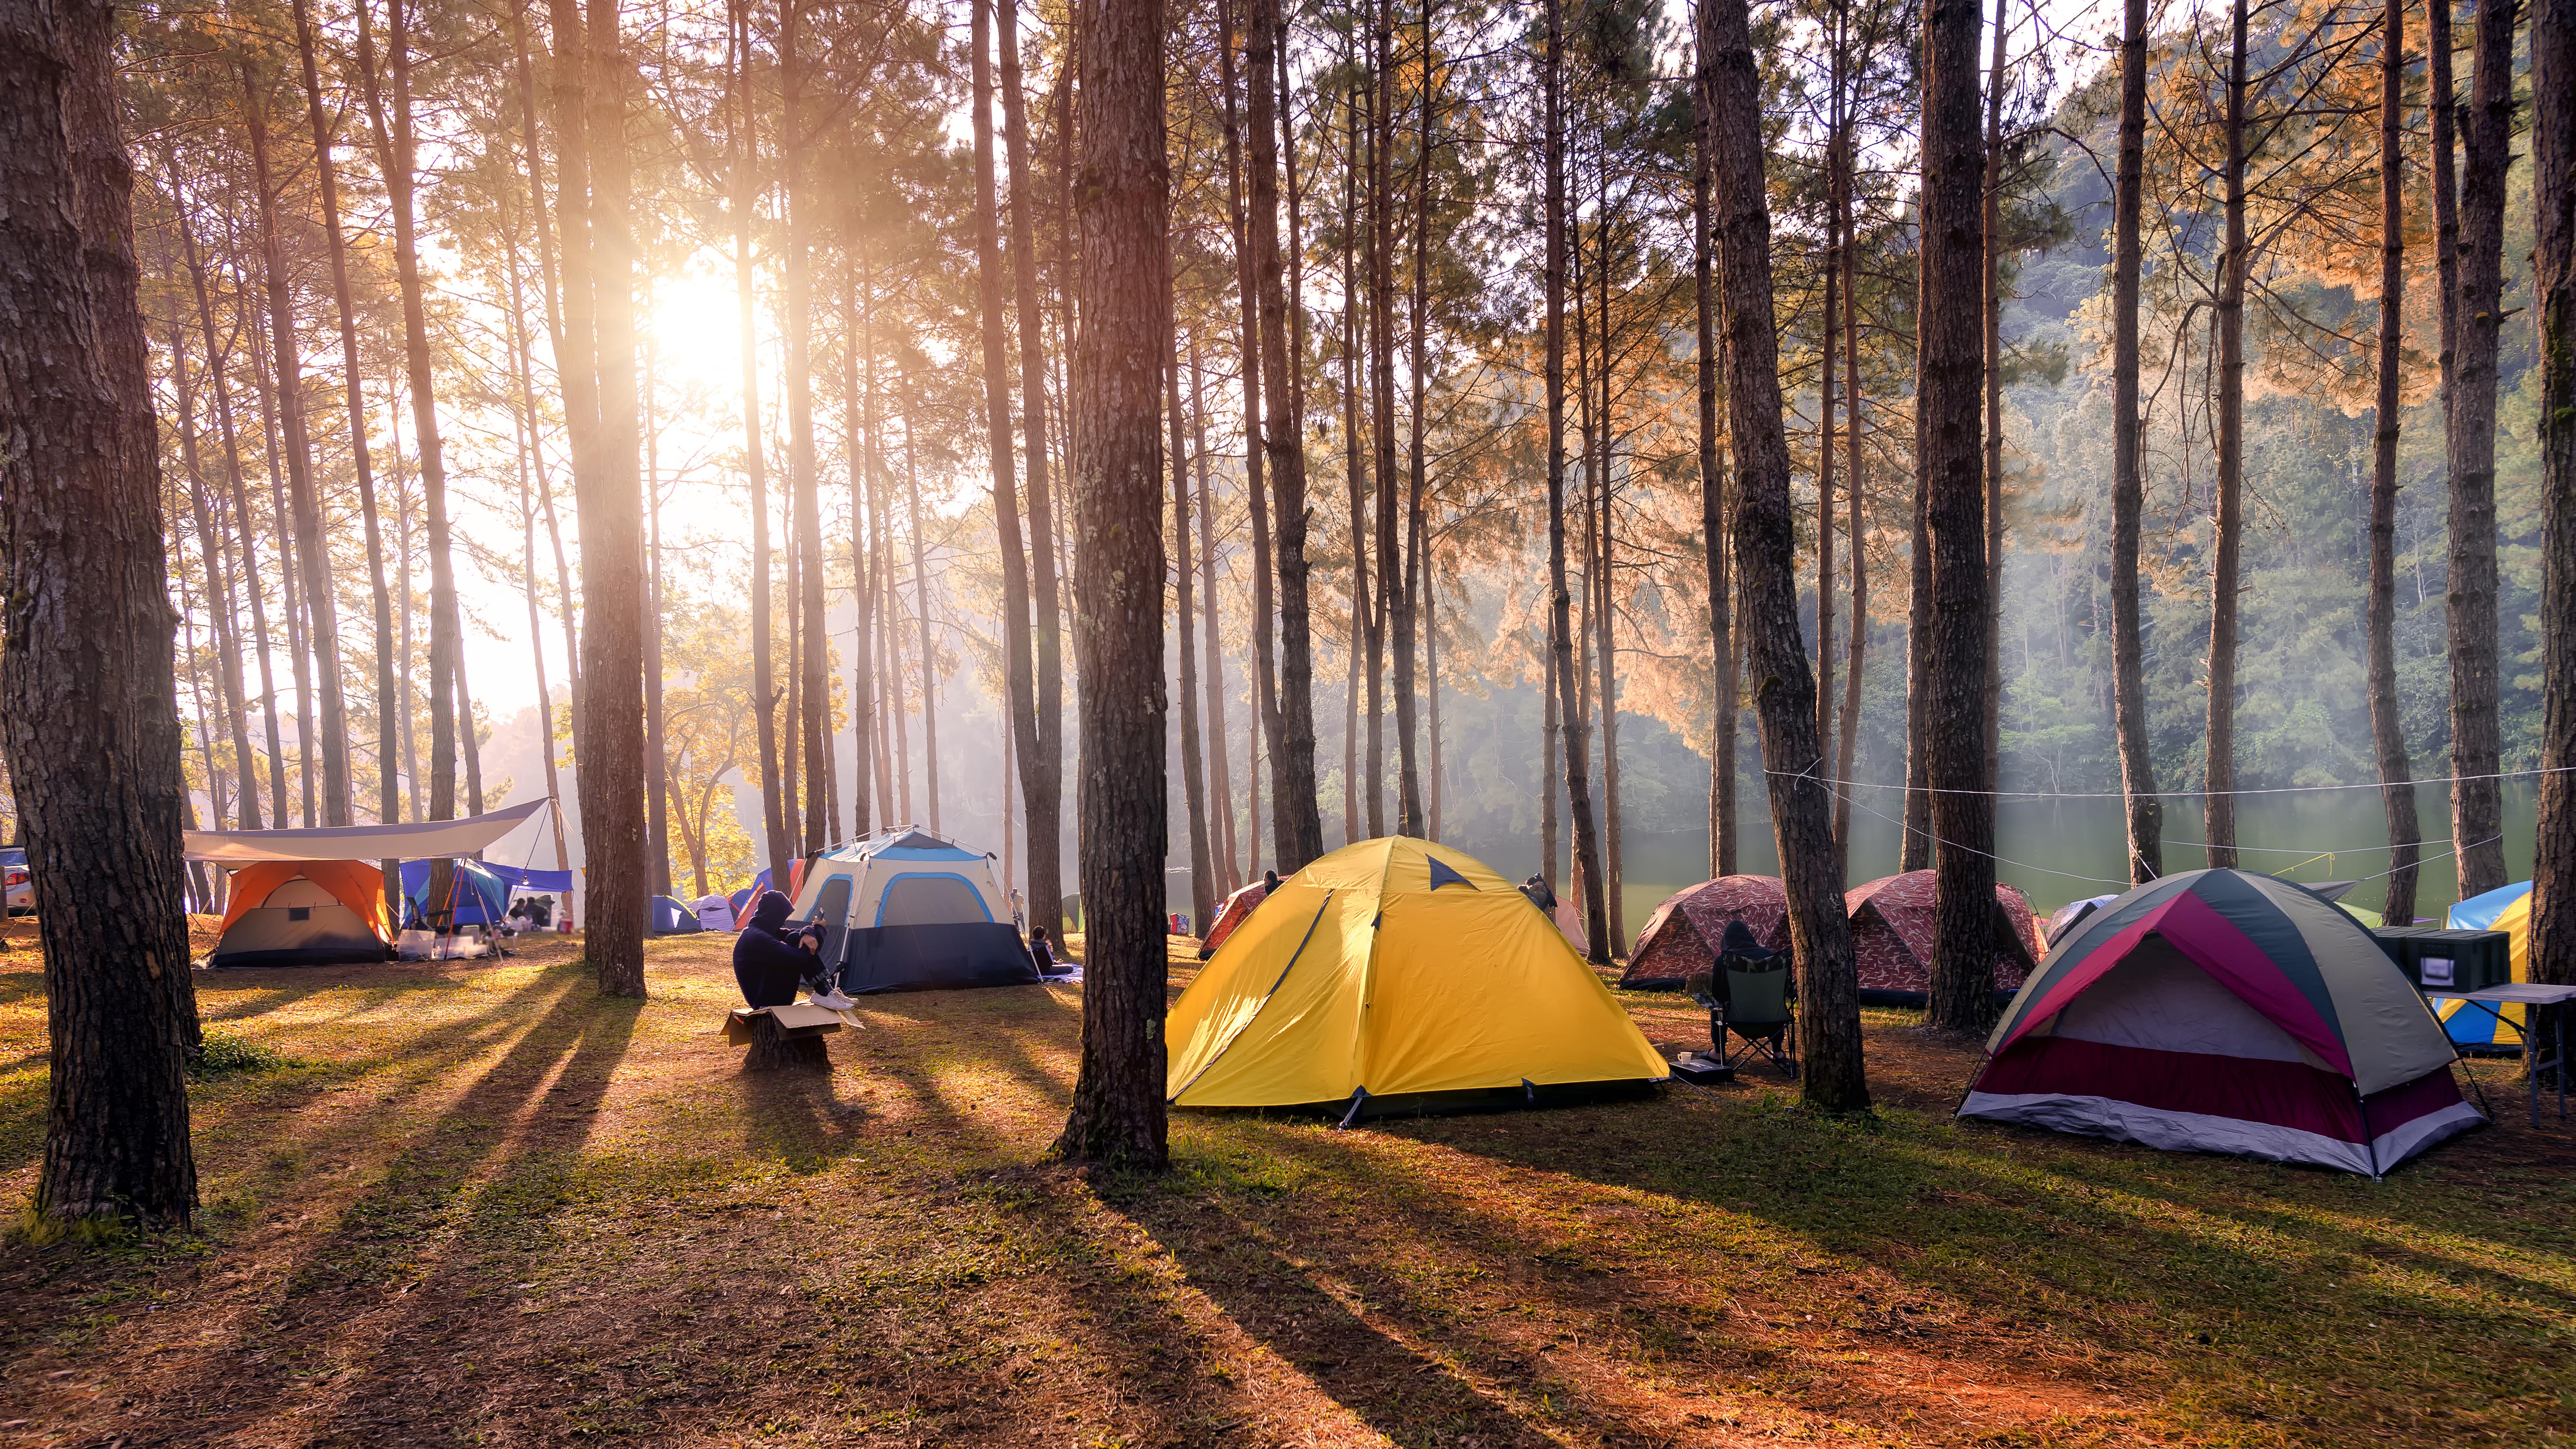 Camping space. Автокемпинг Сосновая роща. Истра кемпинг. Глэмпинг палаточный лагерь. Палаточный кемпинг Истра.